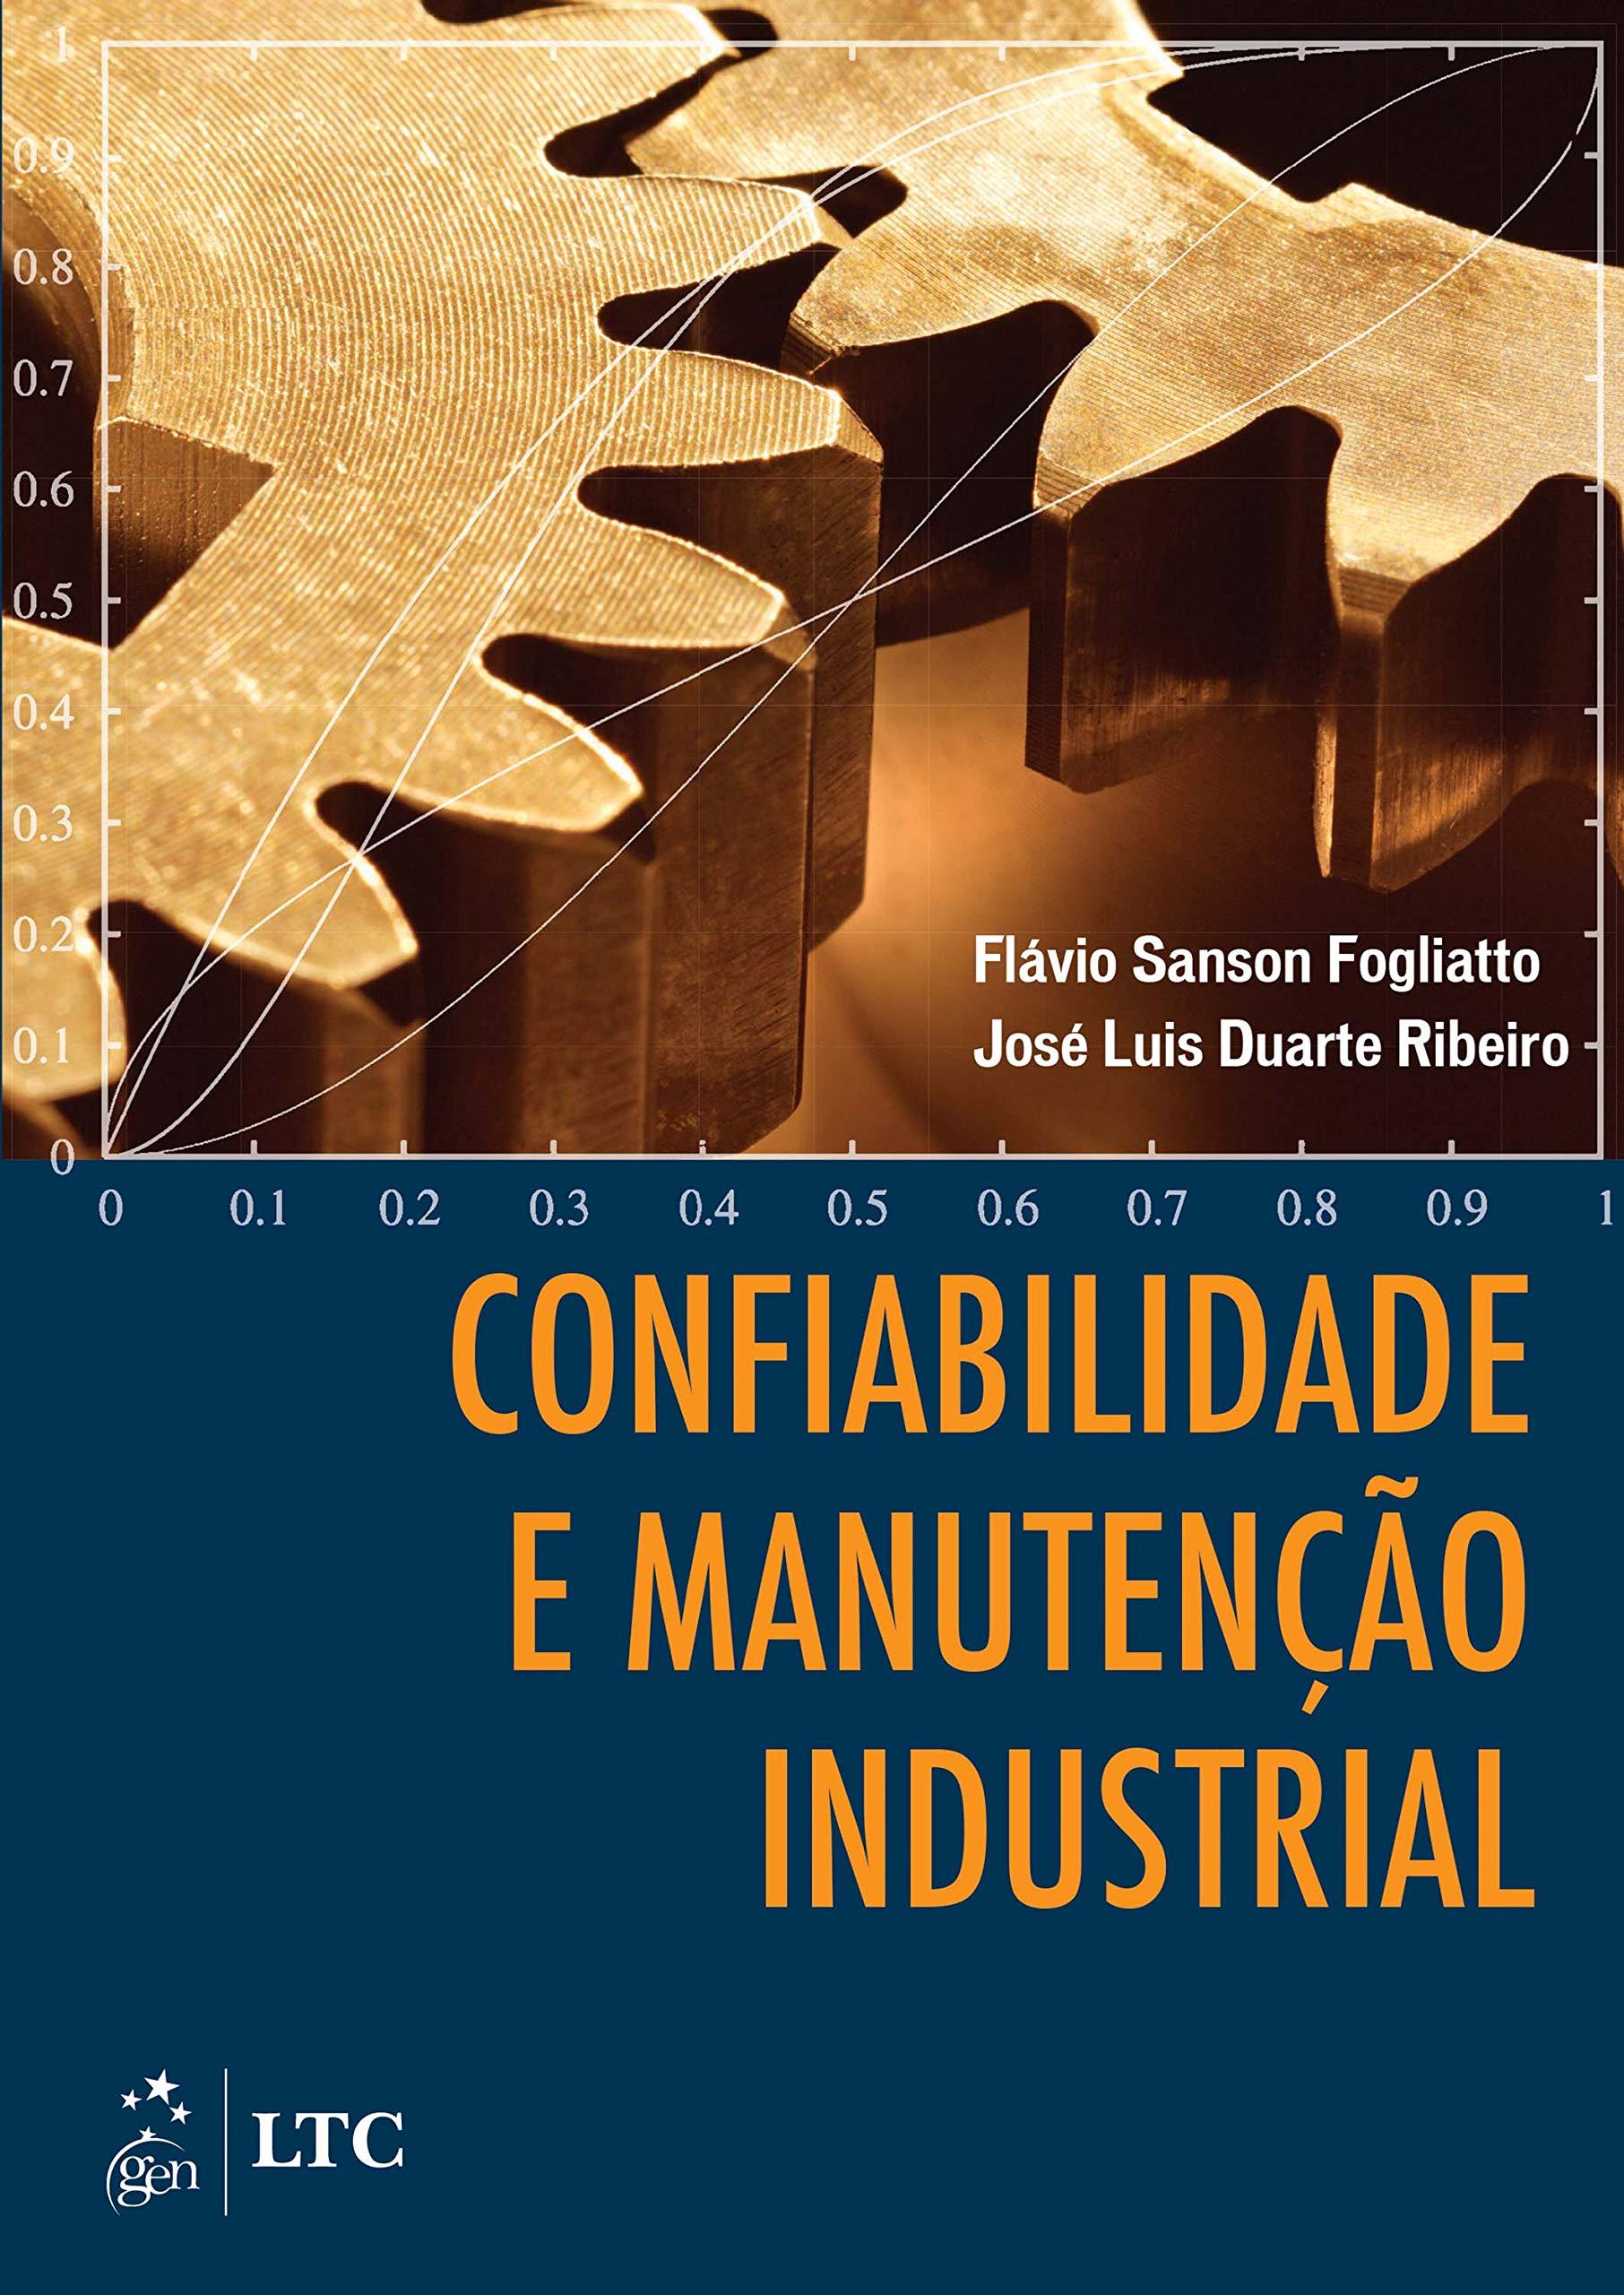 confiabilidade industrial